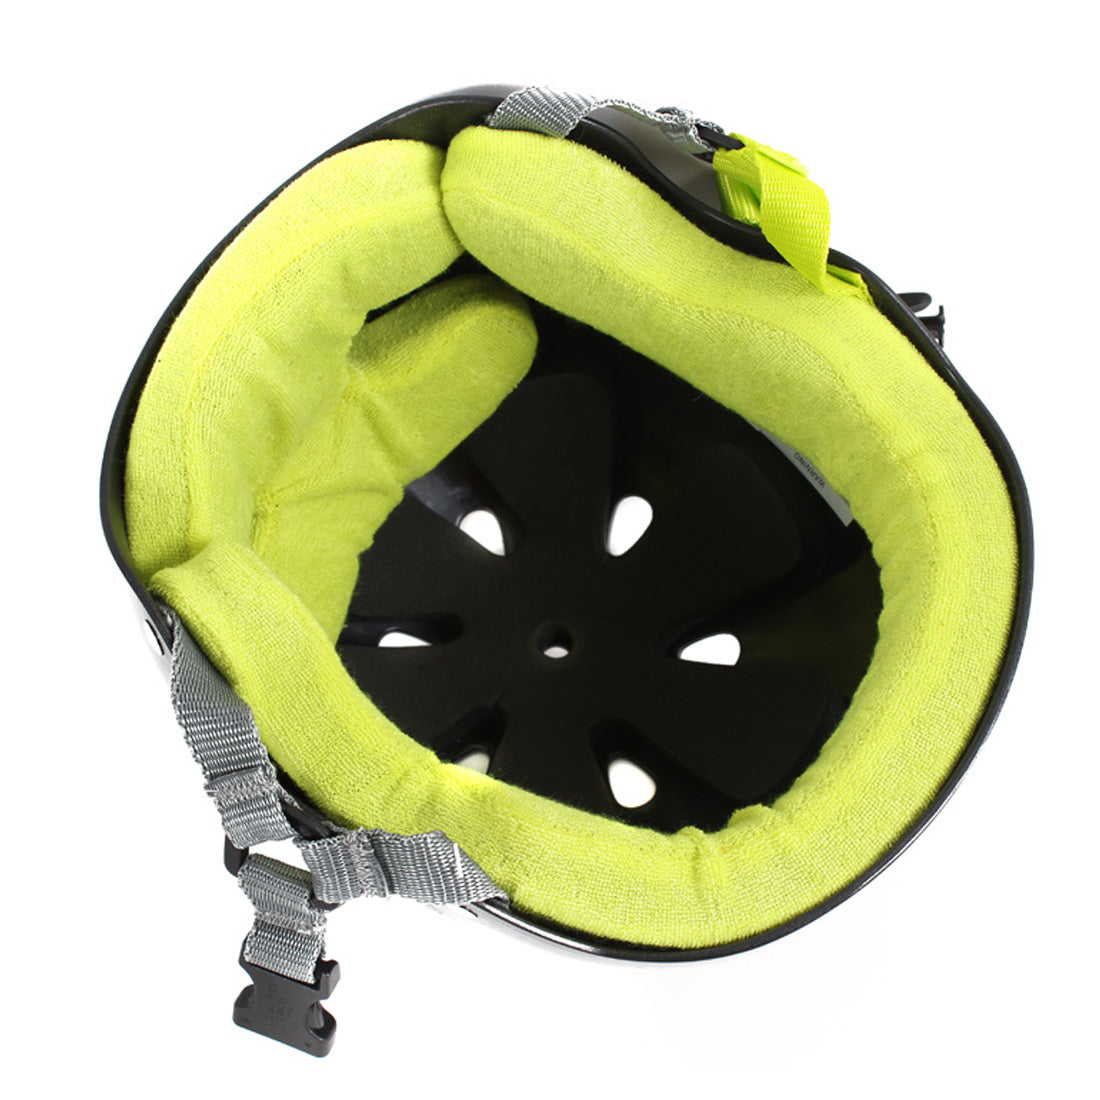 Triple 8 Skate SS Helmet - Black/Lime Gloss Helmets